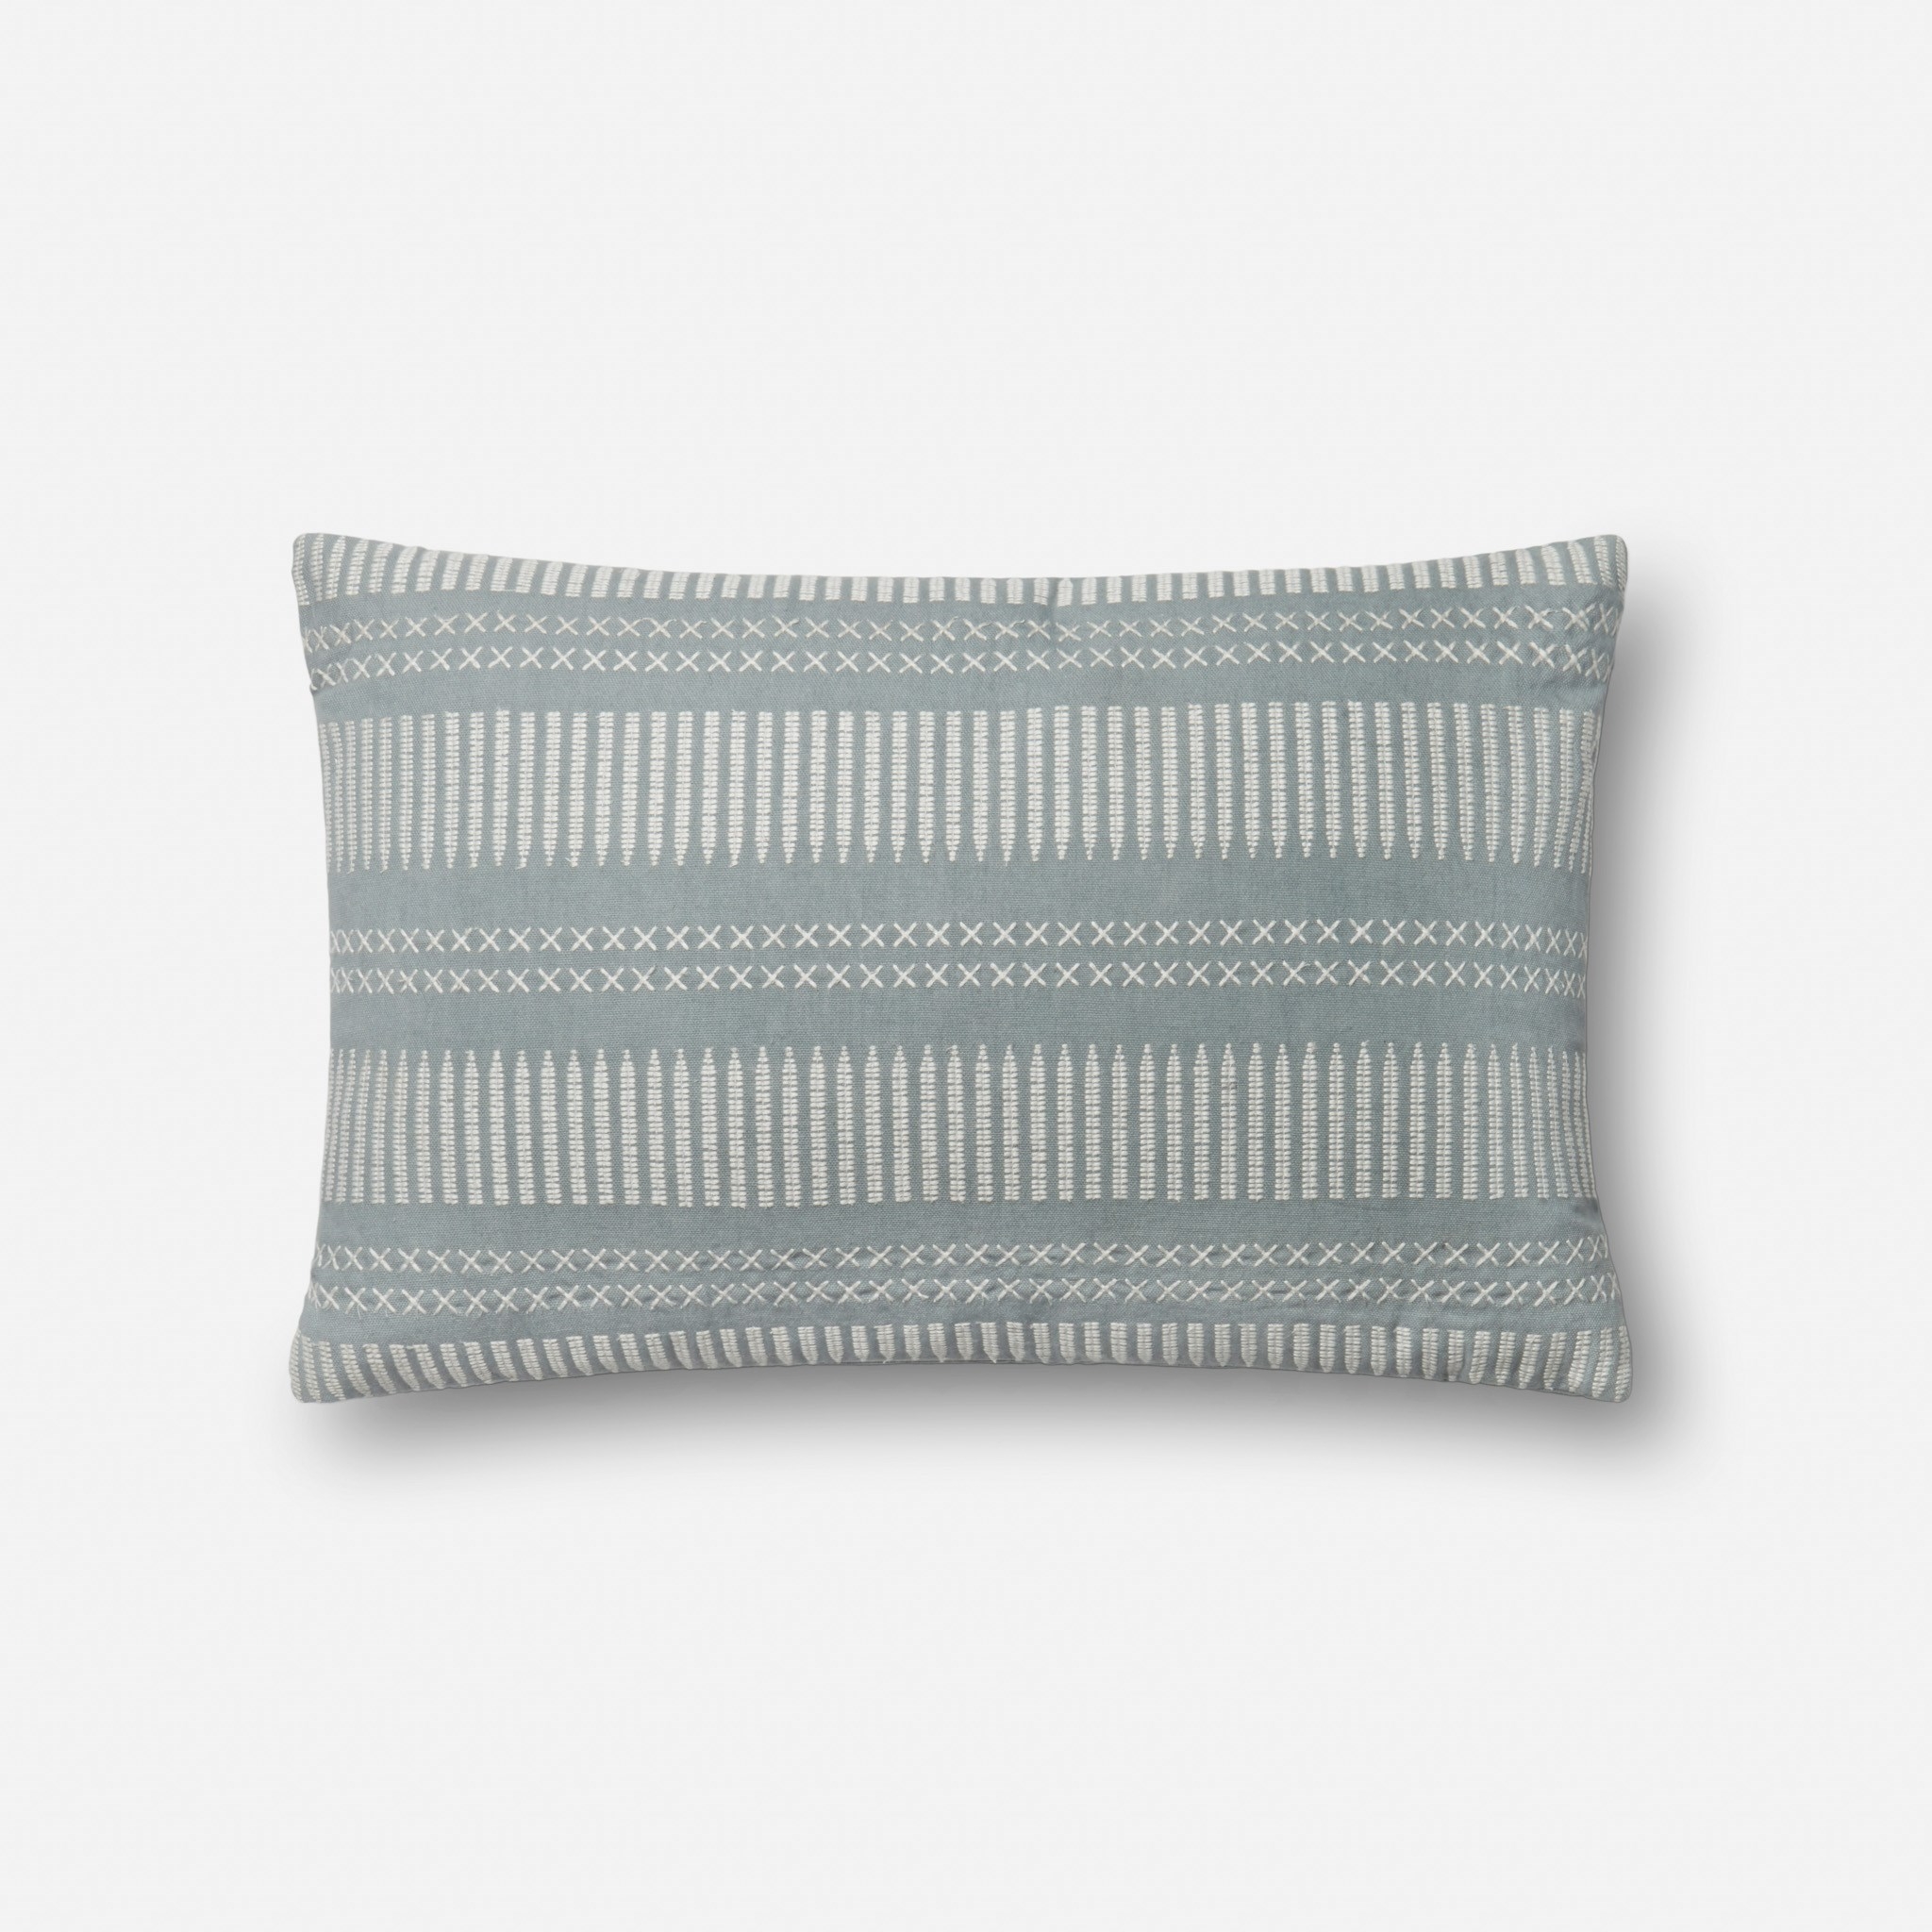 Striped Lumbar Throw Pillow, Light Blue, 21" x 13" - Image 0